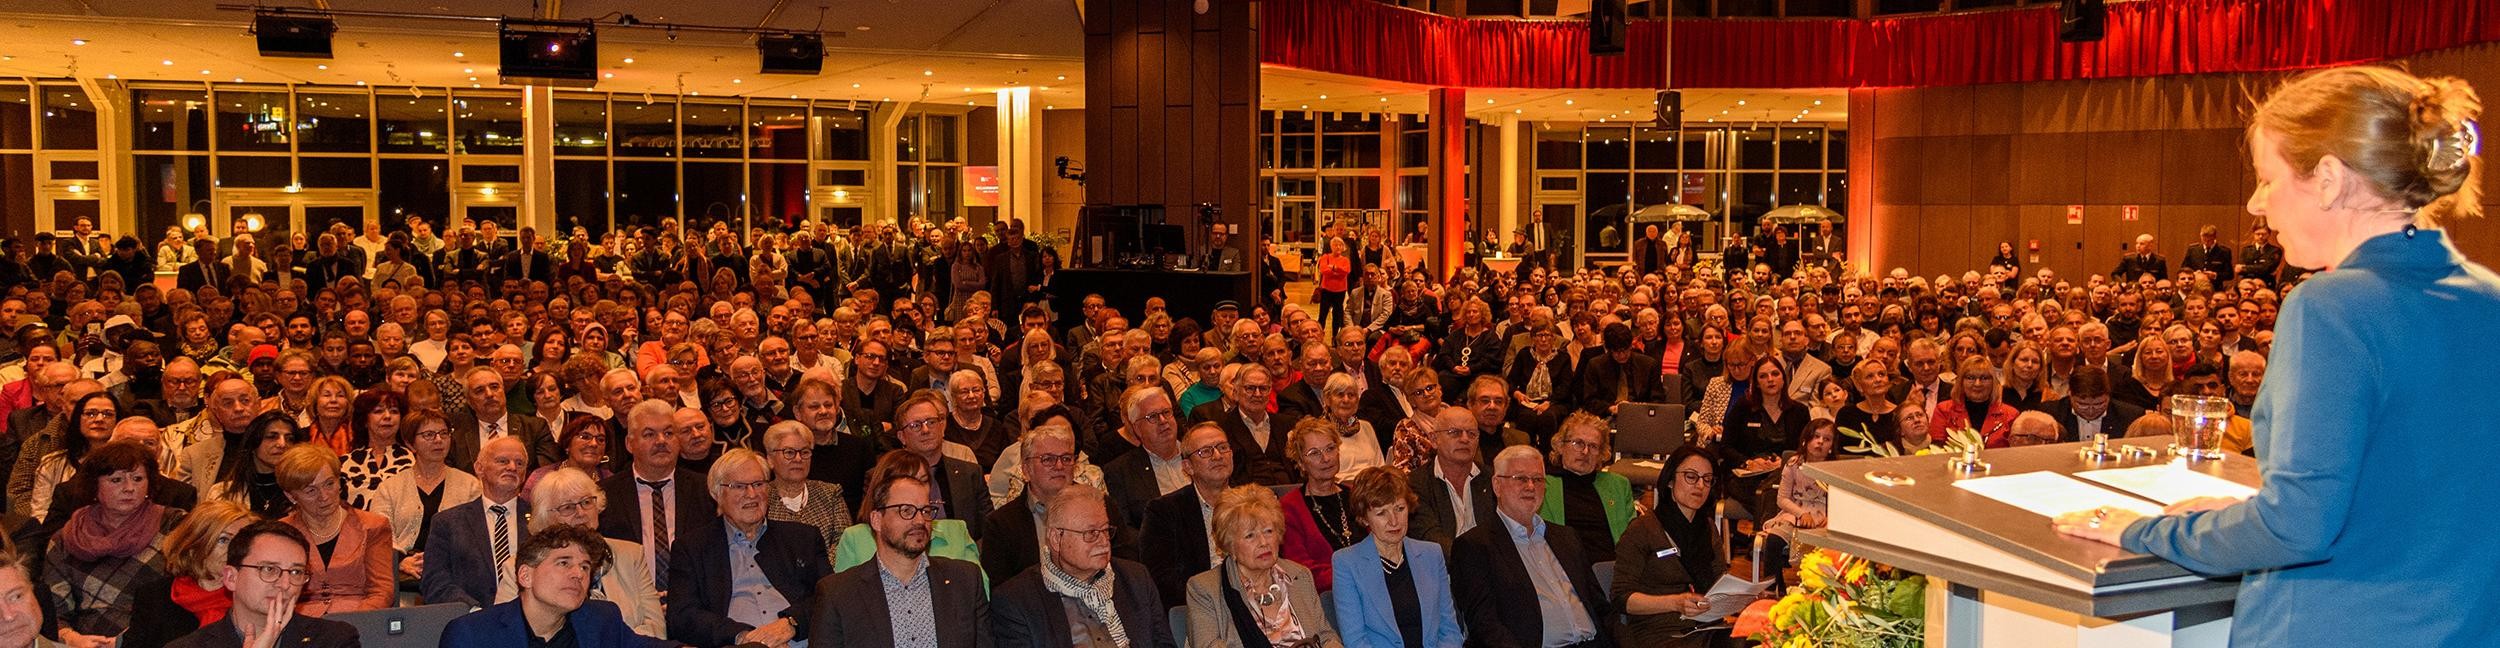 Le public et la scène avec OB Müller lors de la réception du Nouvel An à la Badner Halle